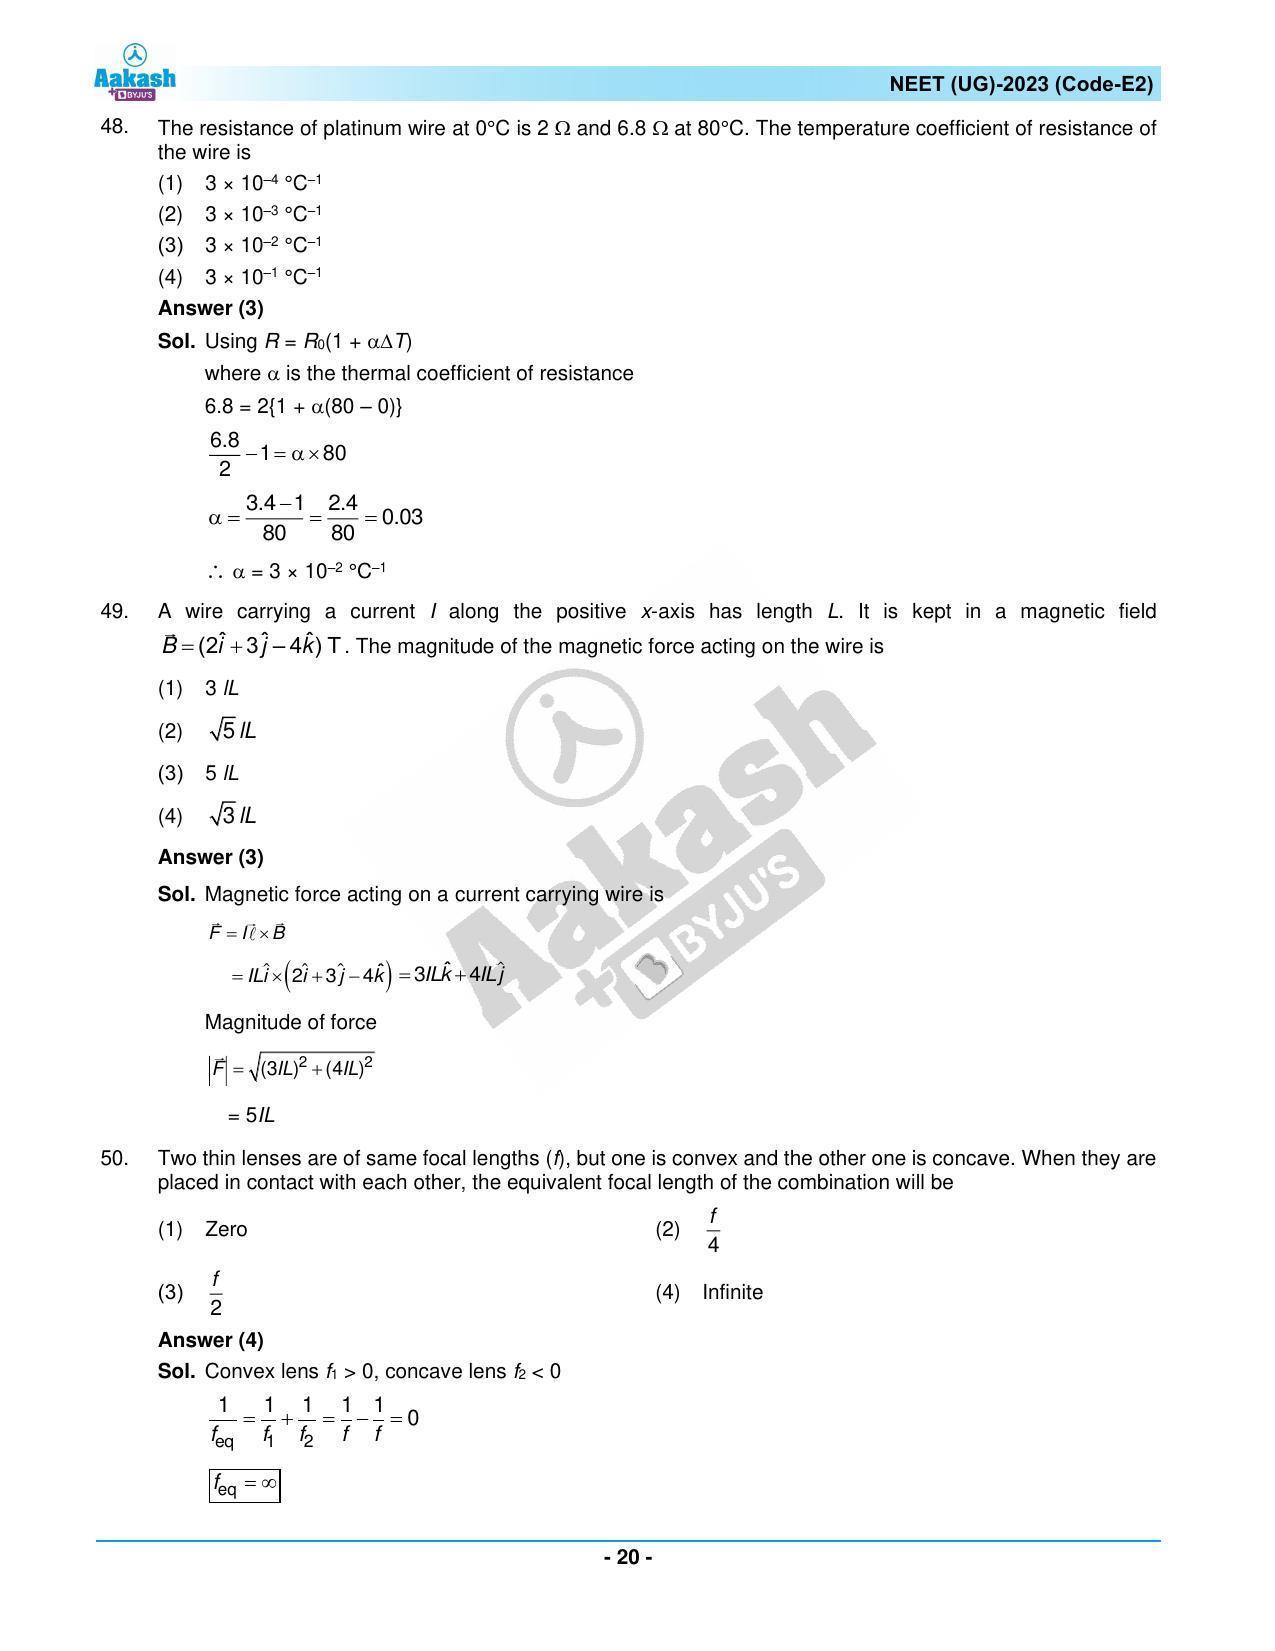 NEET 2023 Question Paper E2 - Page 20